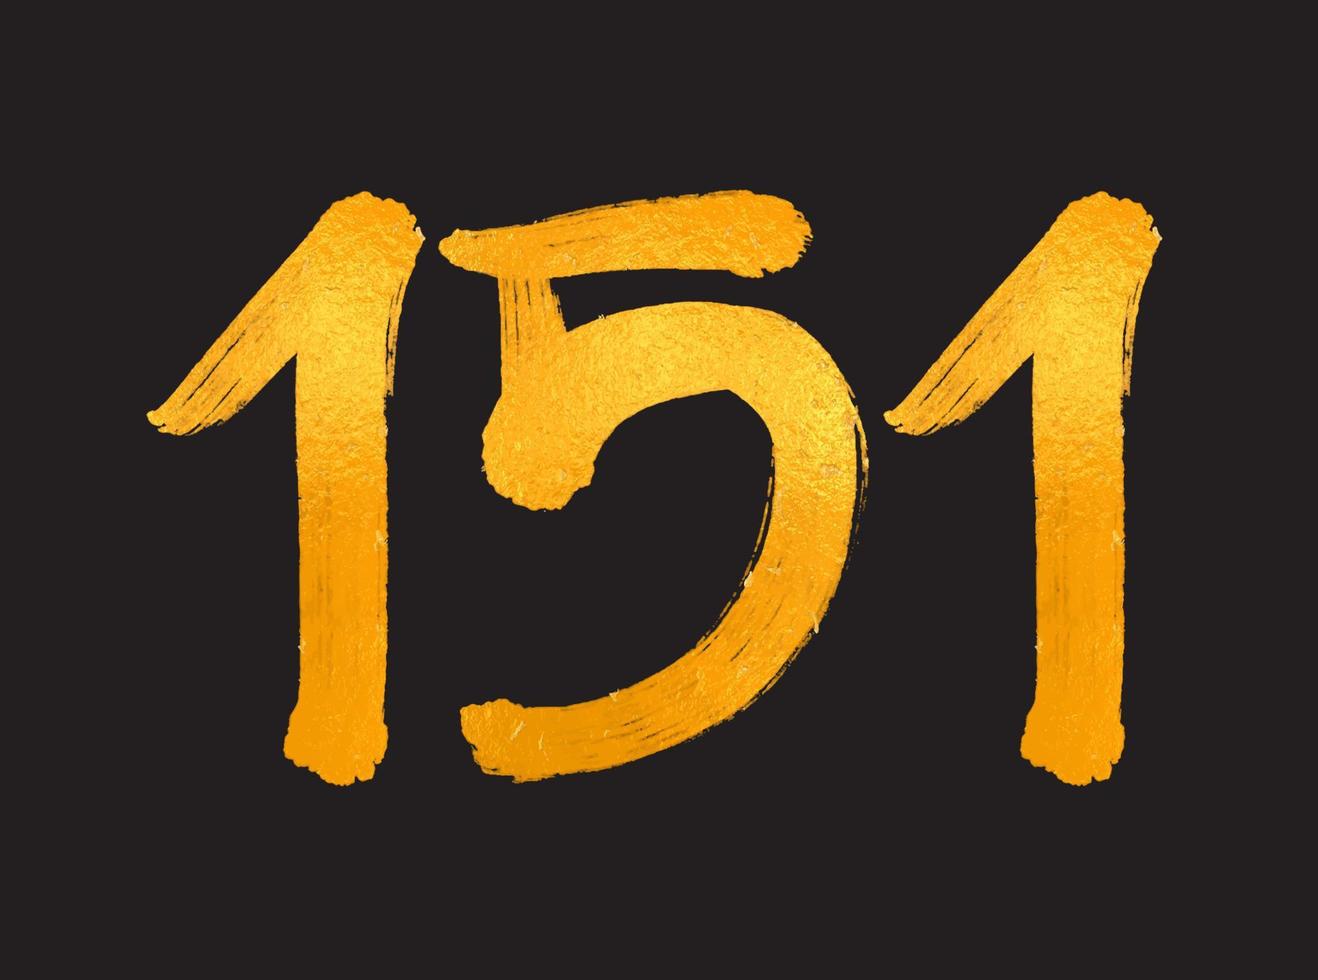 151 numero logo vettore illustrazione, 151 anni anniversario celebrazione vettore modello, 151° compleanno, oro lettering numeri spazzola disegno mano disegnato schizzo, numero logo design per Stampa, t camicia